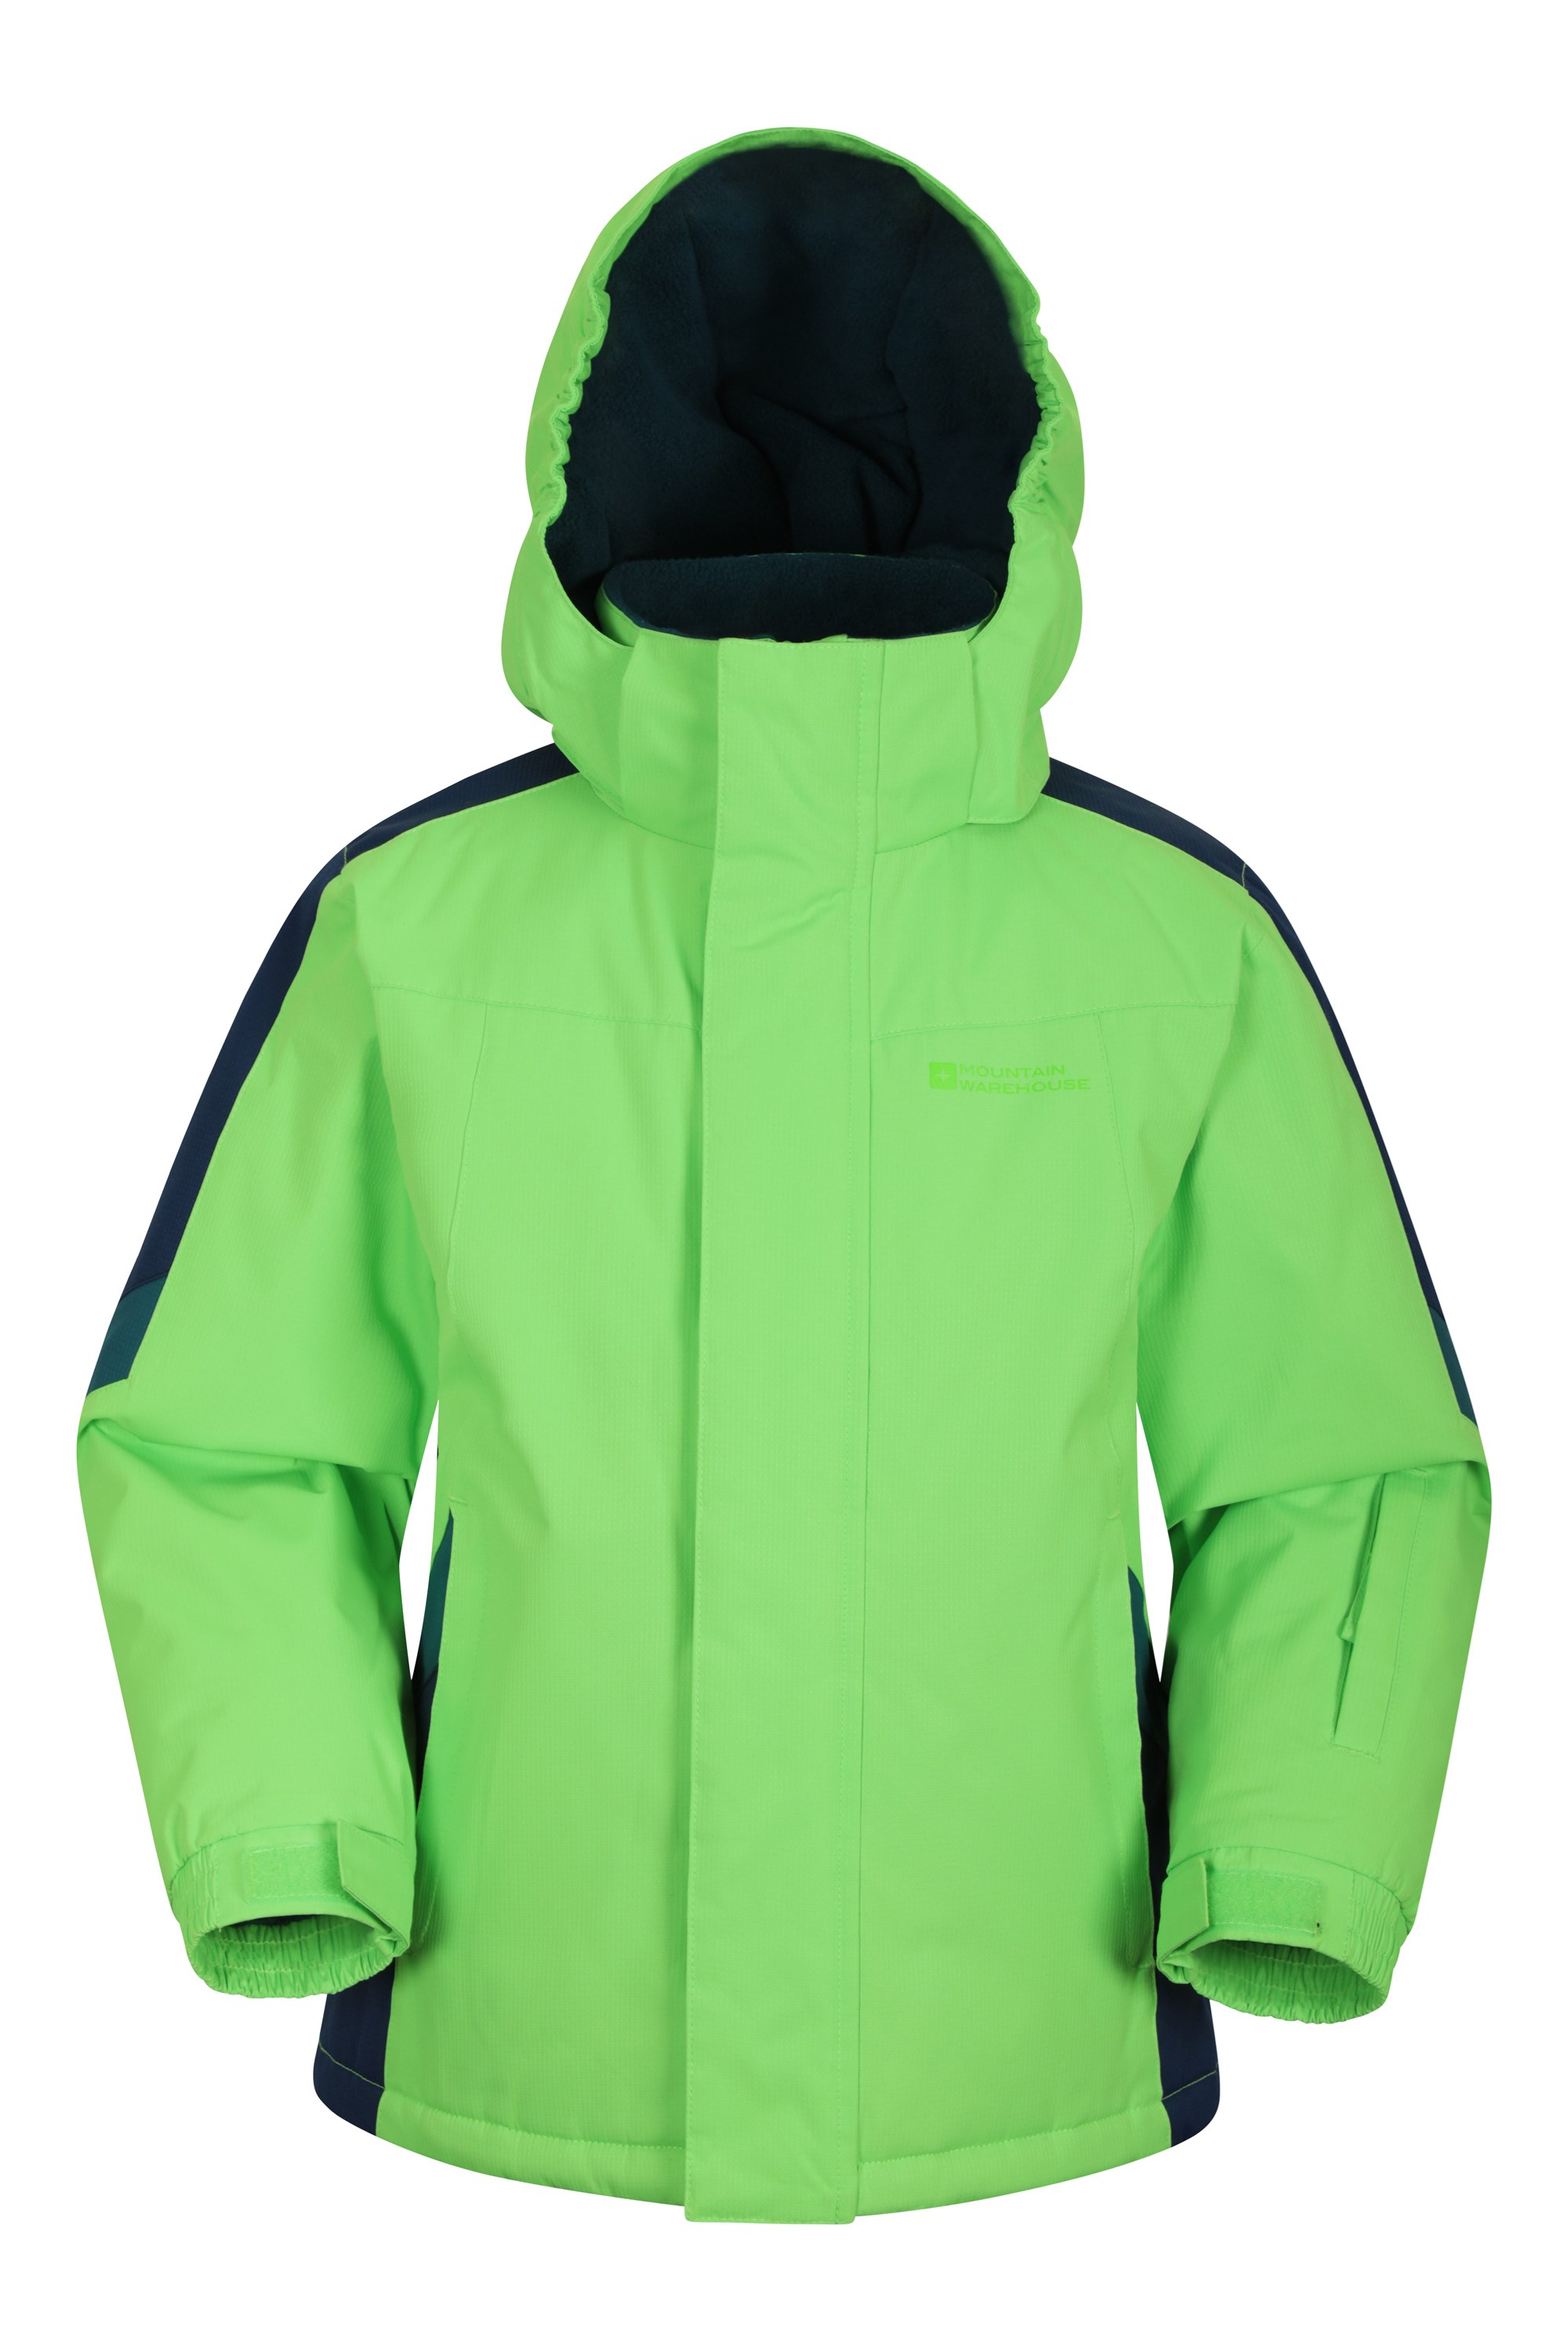 für Extreme Kälte und Schnee Alpin-Jacke wasserdichter Parka für Jungen und Mädchen Mountain Warehouse Raptor warme Winterjacke für Kinder Ski-Jacke mit Taschen 